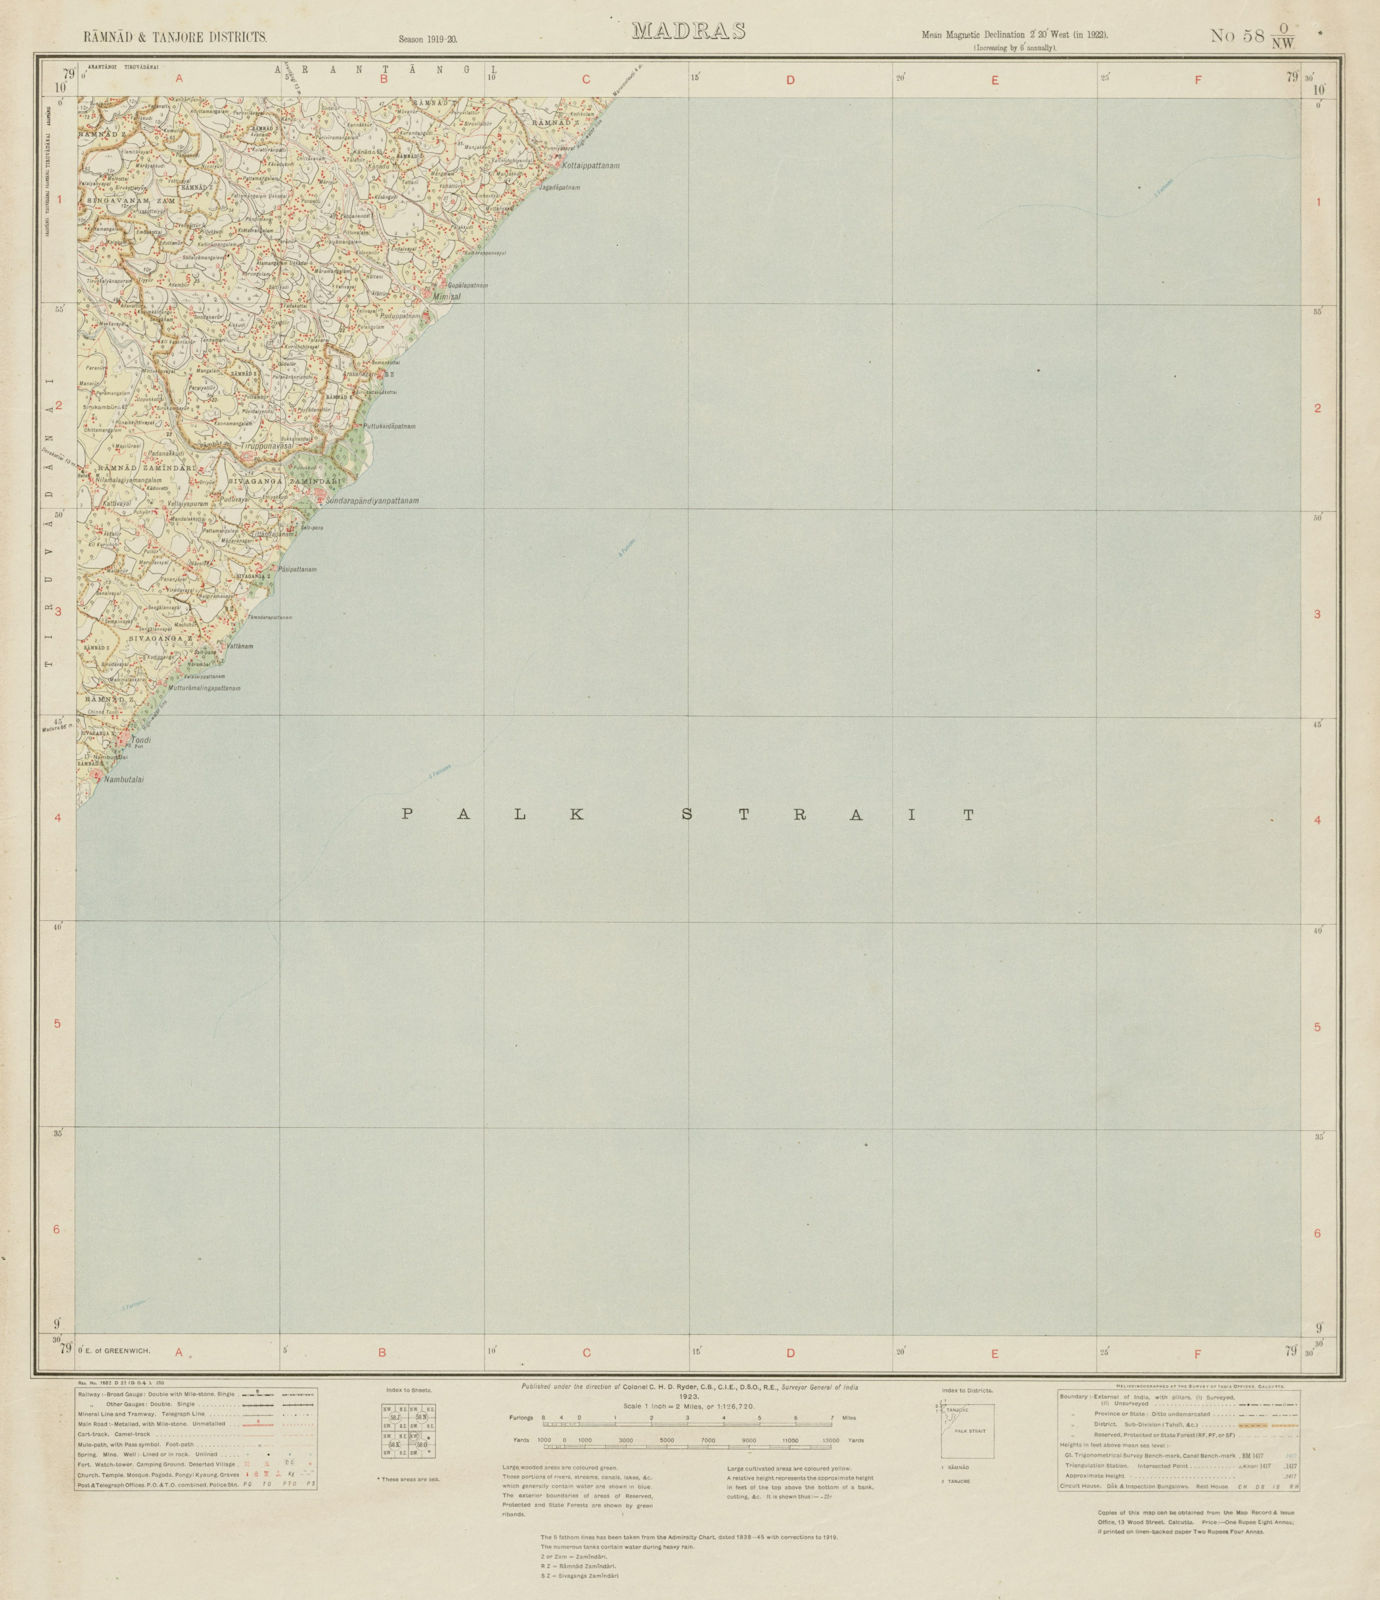 SURVEY OF INDIA 58 O/NW Tamil Nadu Thondi Kottaippattanam Palk Strait 1923 map